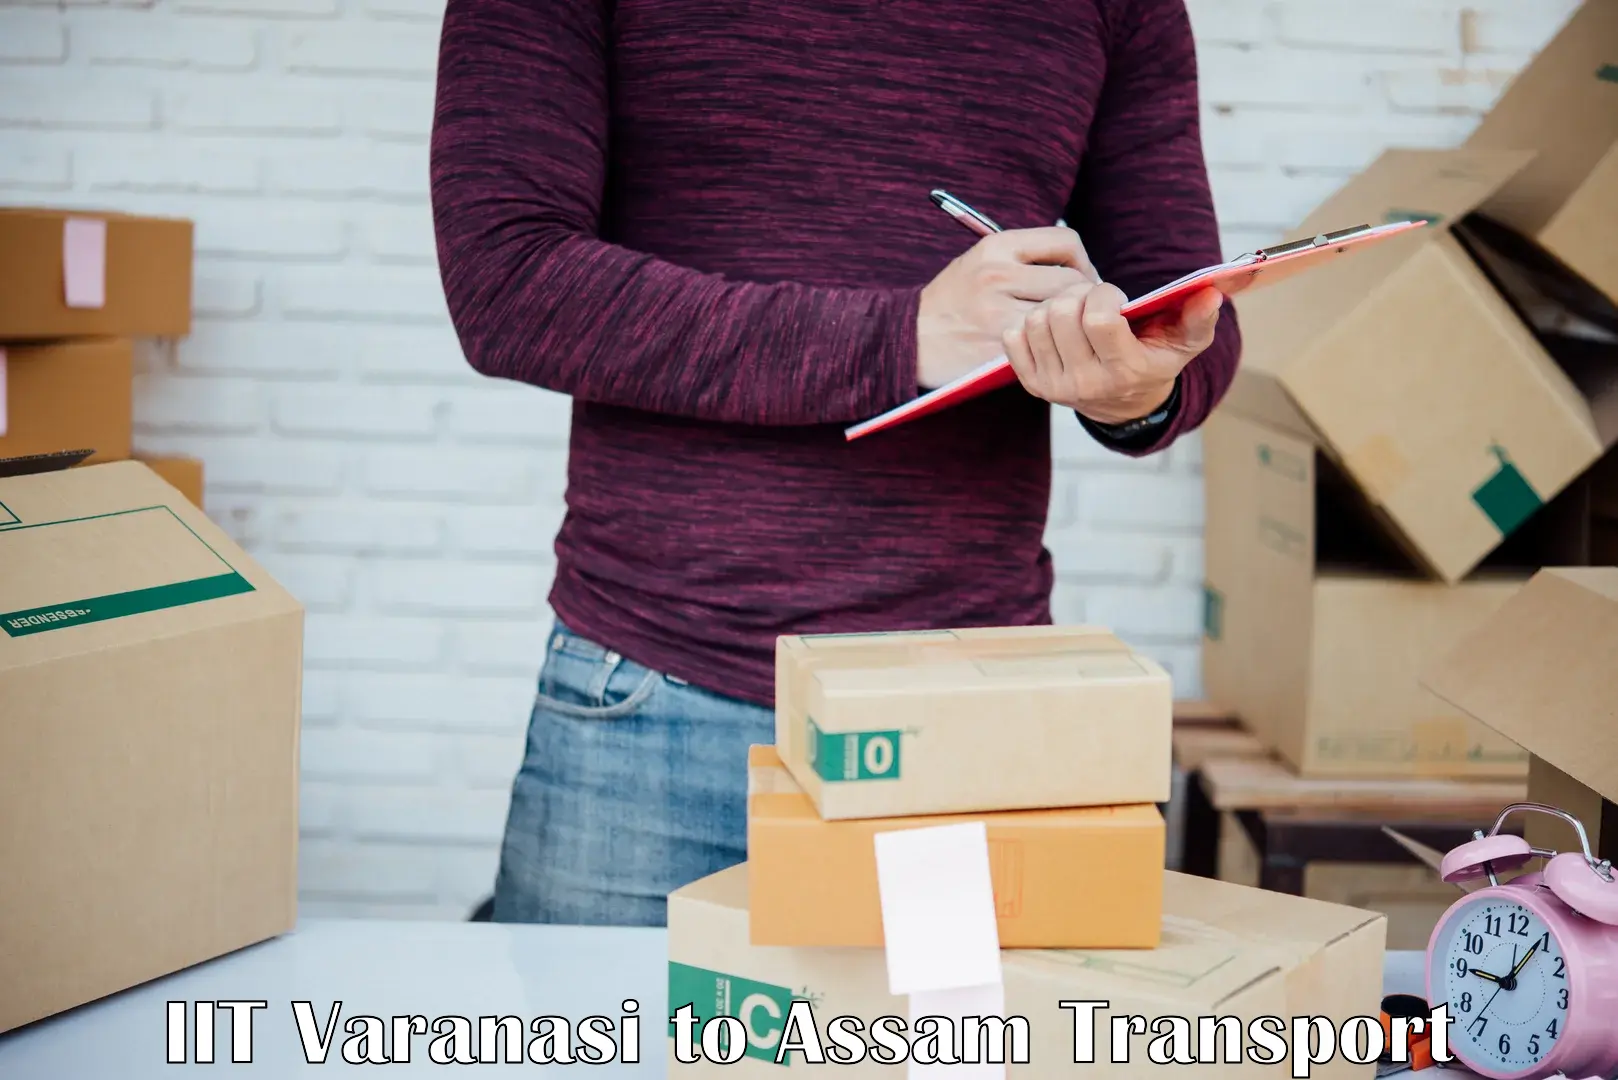 Online transport booking IIT Varanasi to Jorabat